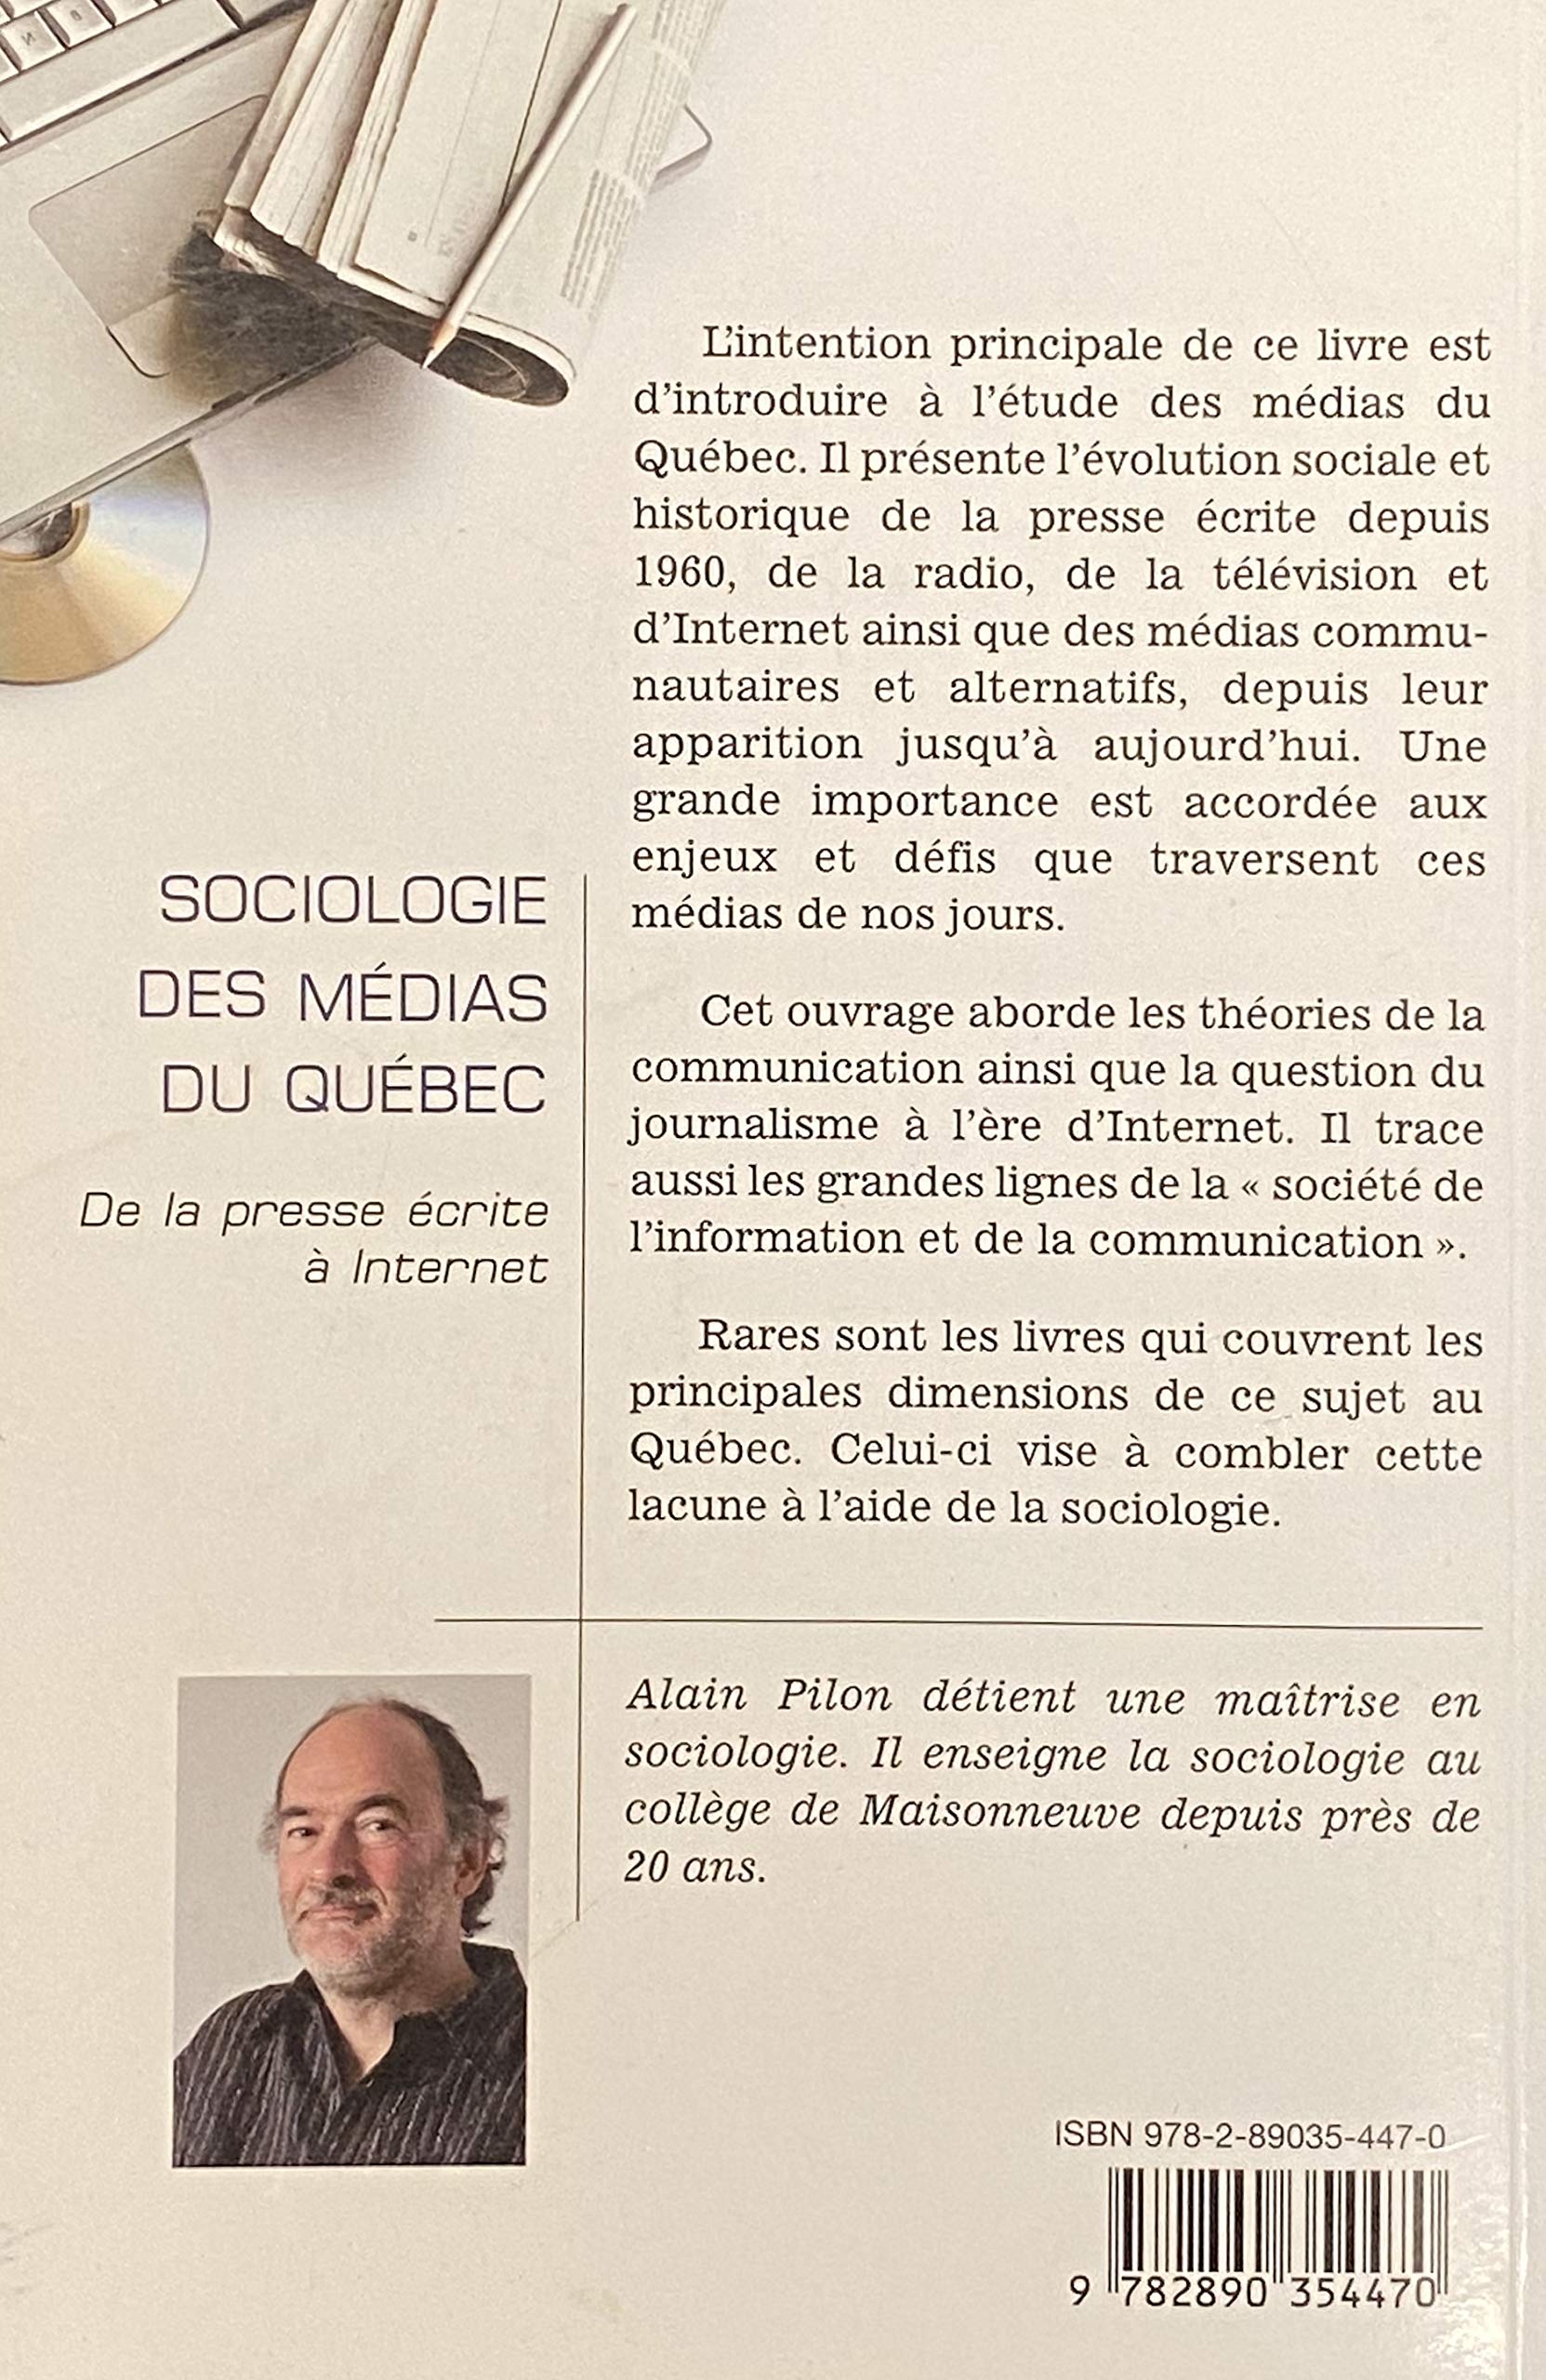 Sociologie des médias du Québec : De la presse écrite à internet (Alain Pilon)